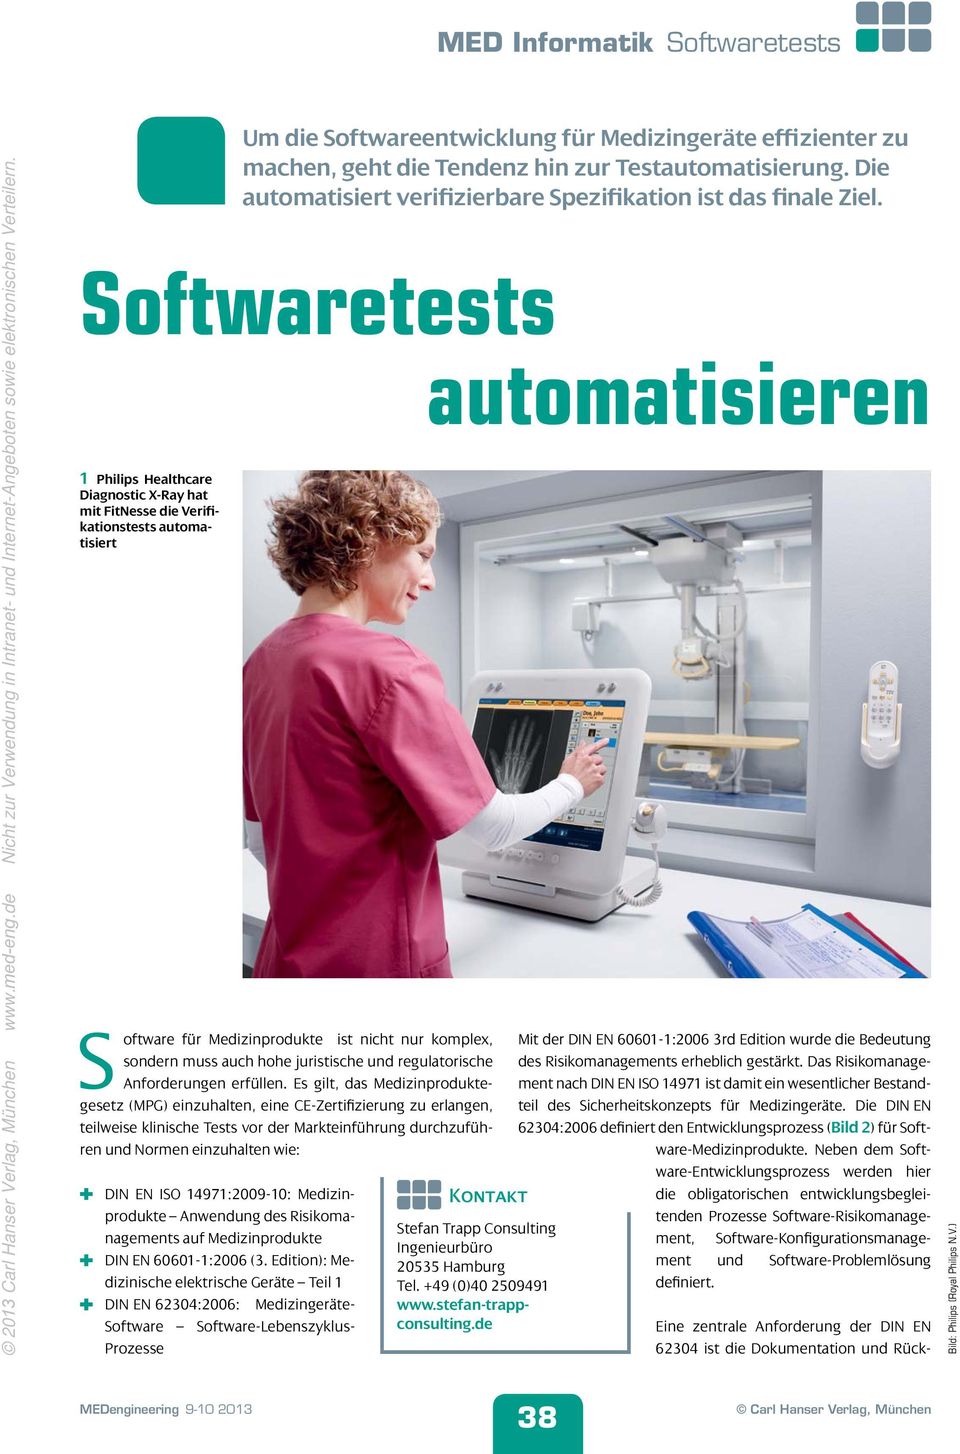 Softwaretests automatisieren 1 Philips Healthcare Diagnostic X-Ray hat mit FitNesse die Verifikationstests automatisiert Software für Medizinprodukte ist nicht nur komplex, sondern muss auch hohe